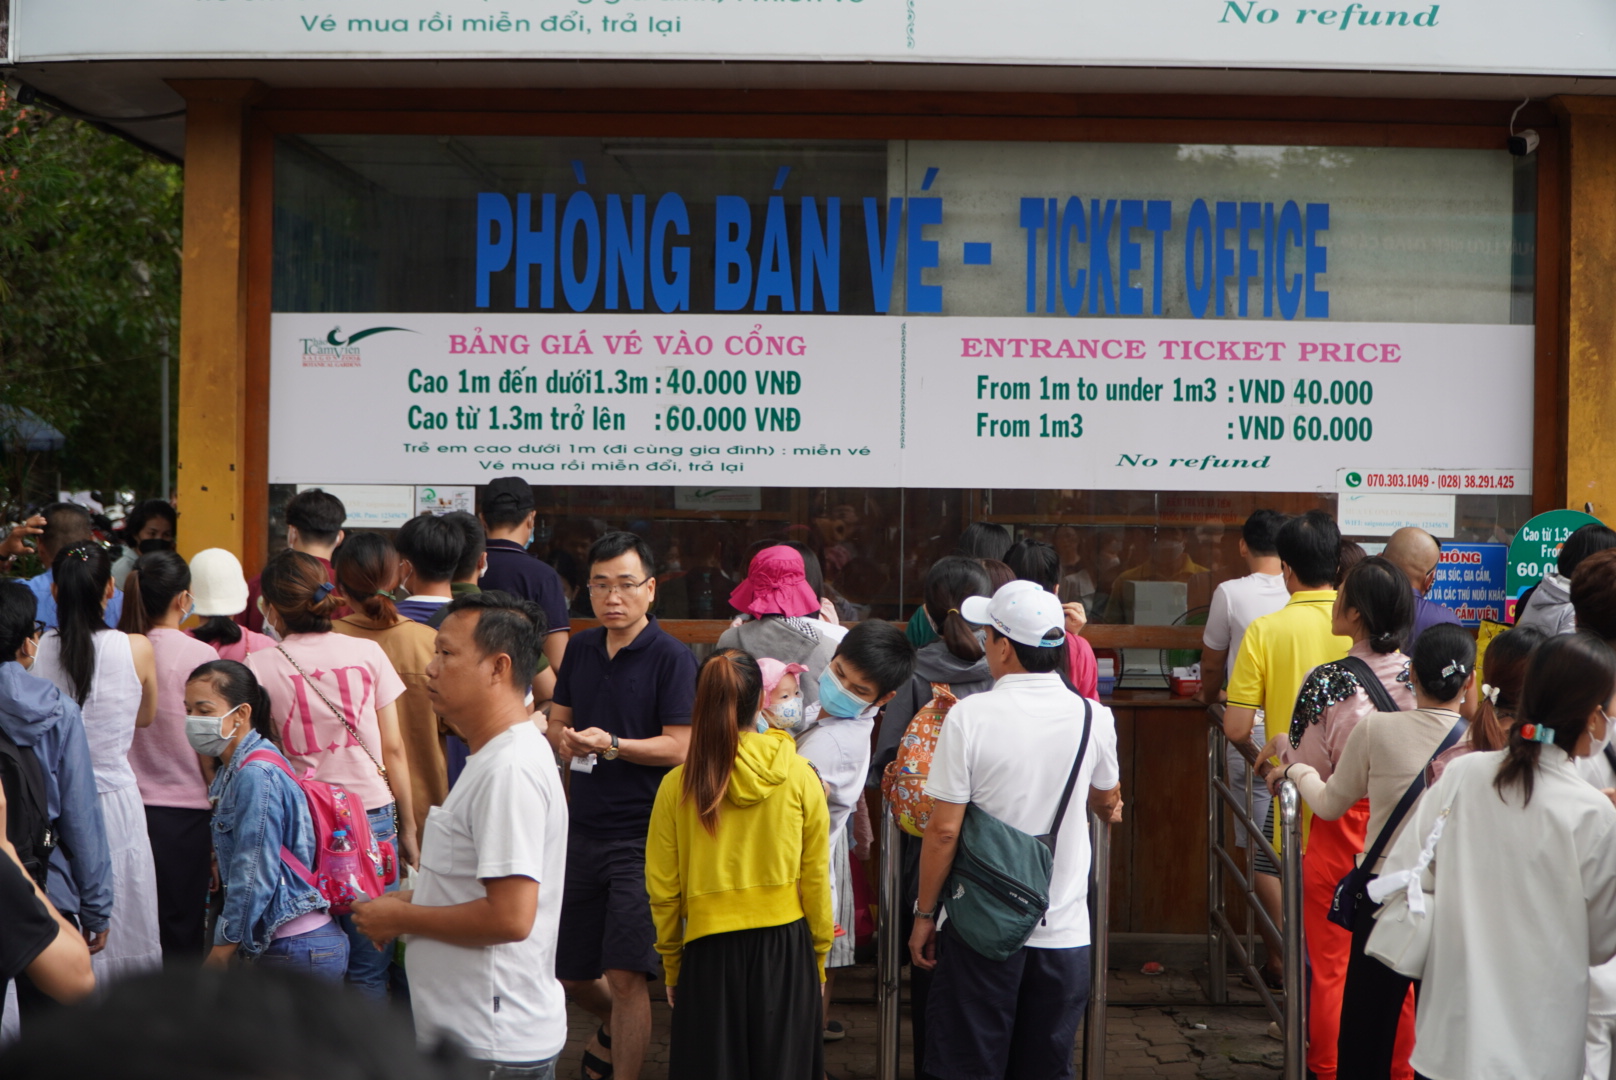 Hình ảnh tương tự cũng xuất hiện tại khu vực bán vé vào Thảo Cầm Viên Sài Gòn. 